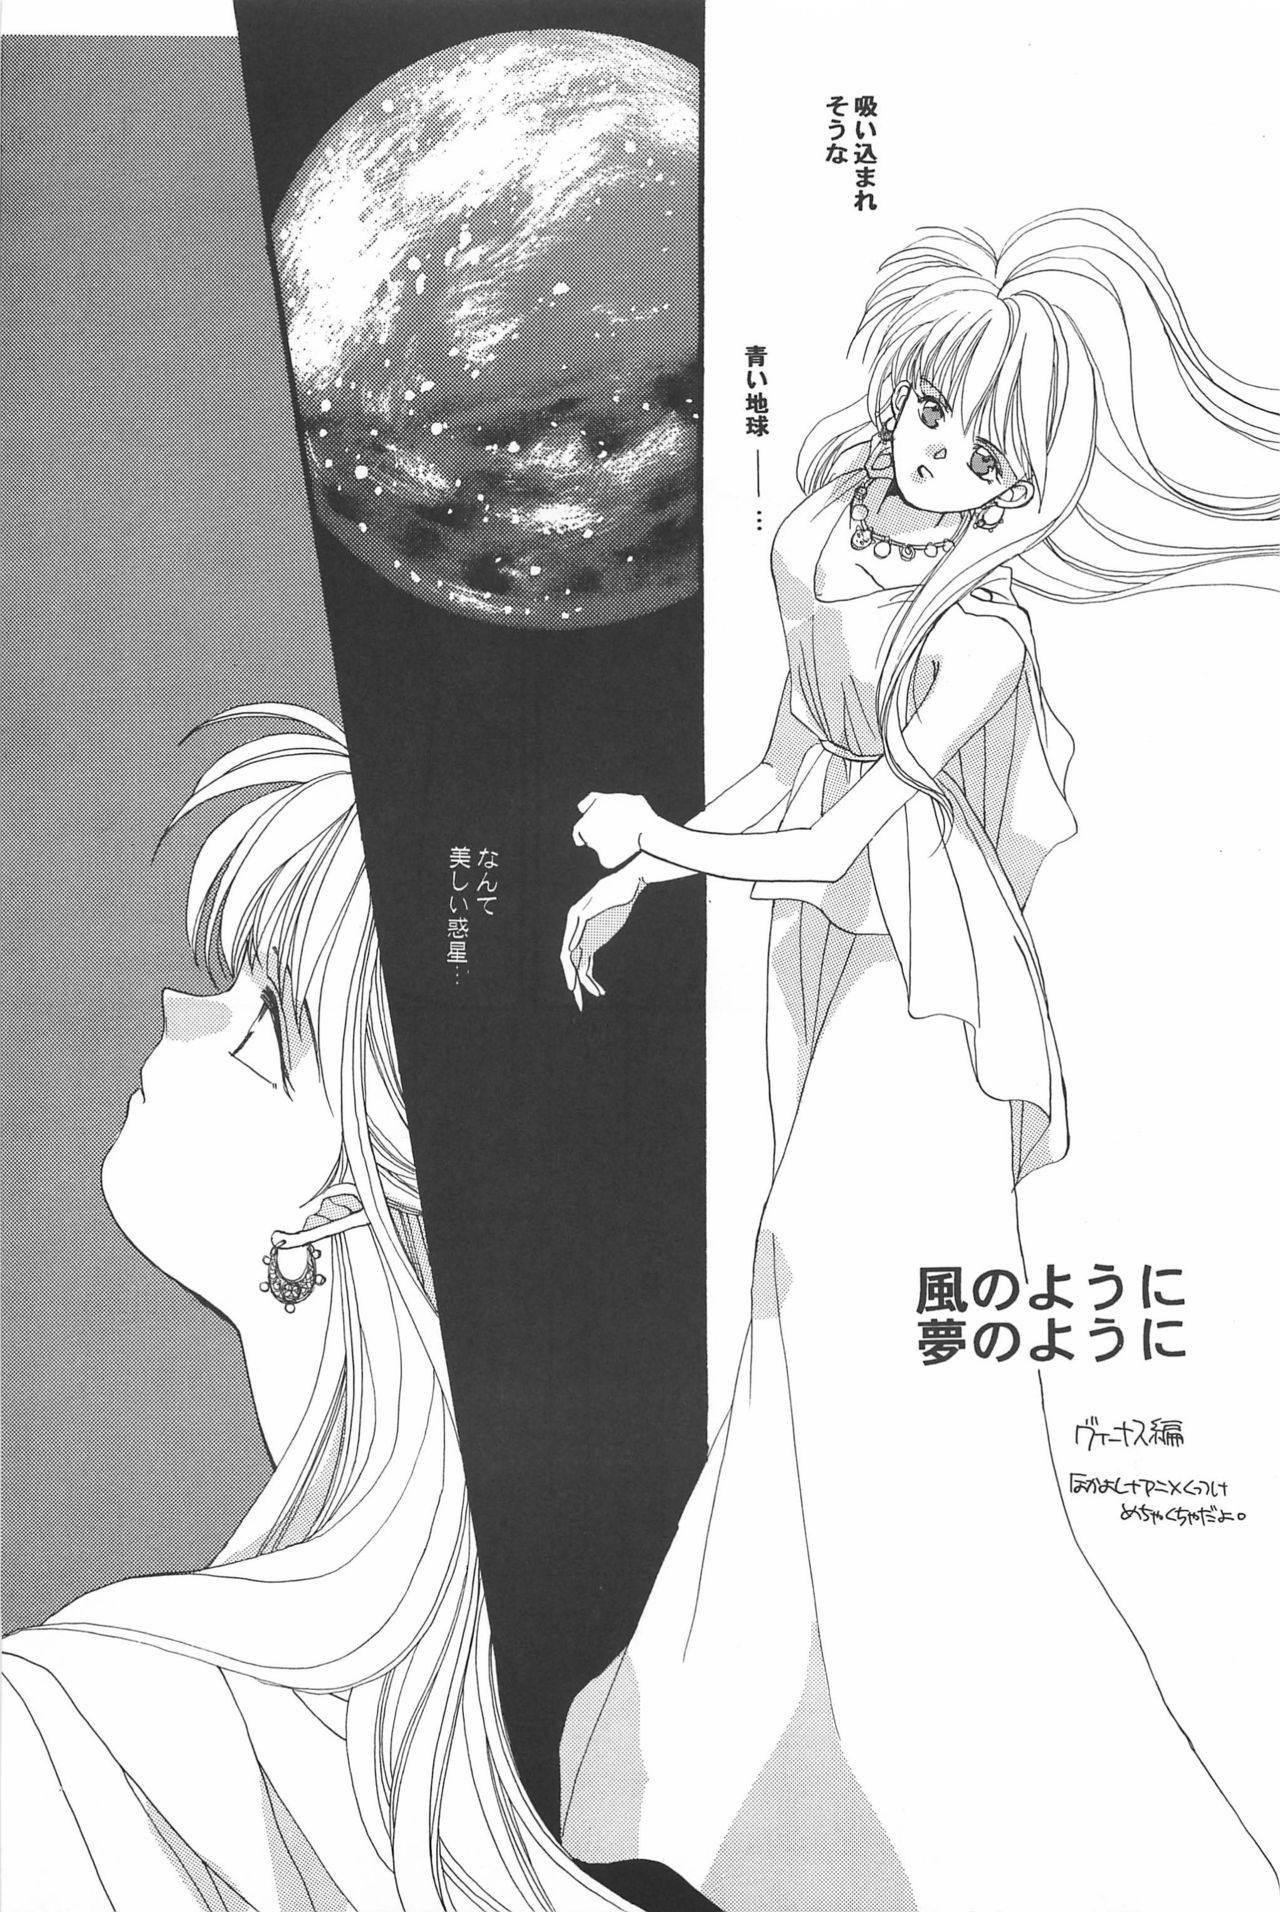 [Hello World (Muttri Moony)] Kaze no You ni Yume no You ni - Sailor Moon Collection (Sailor Moon) 102